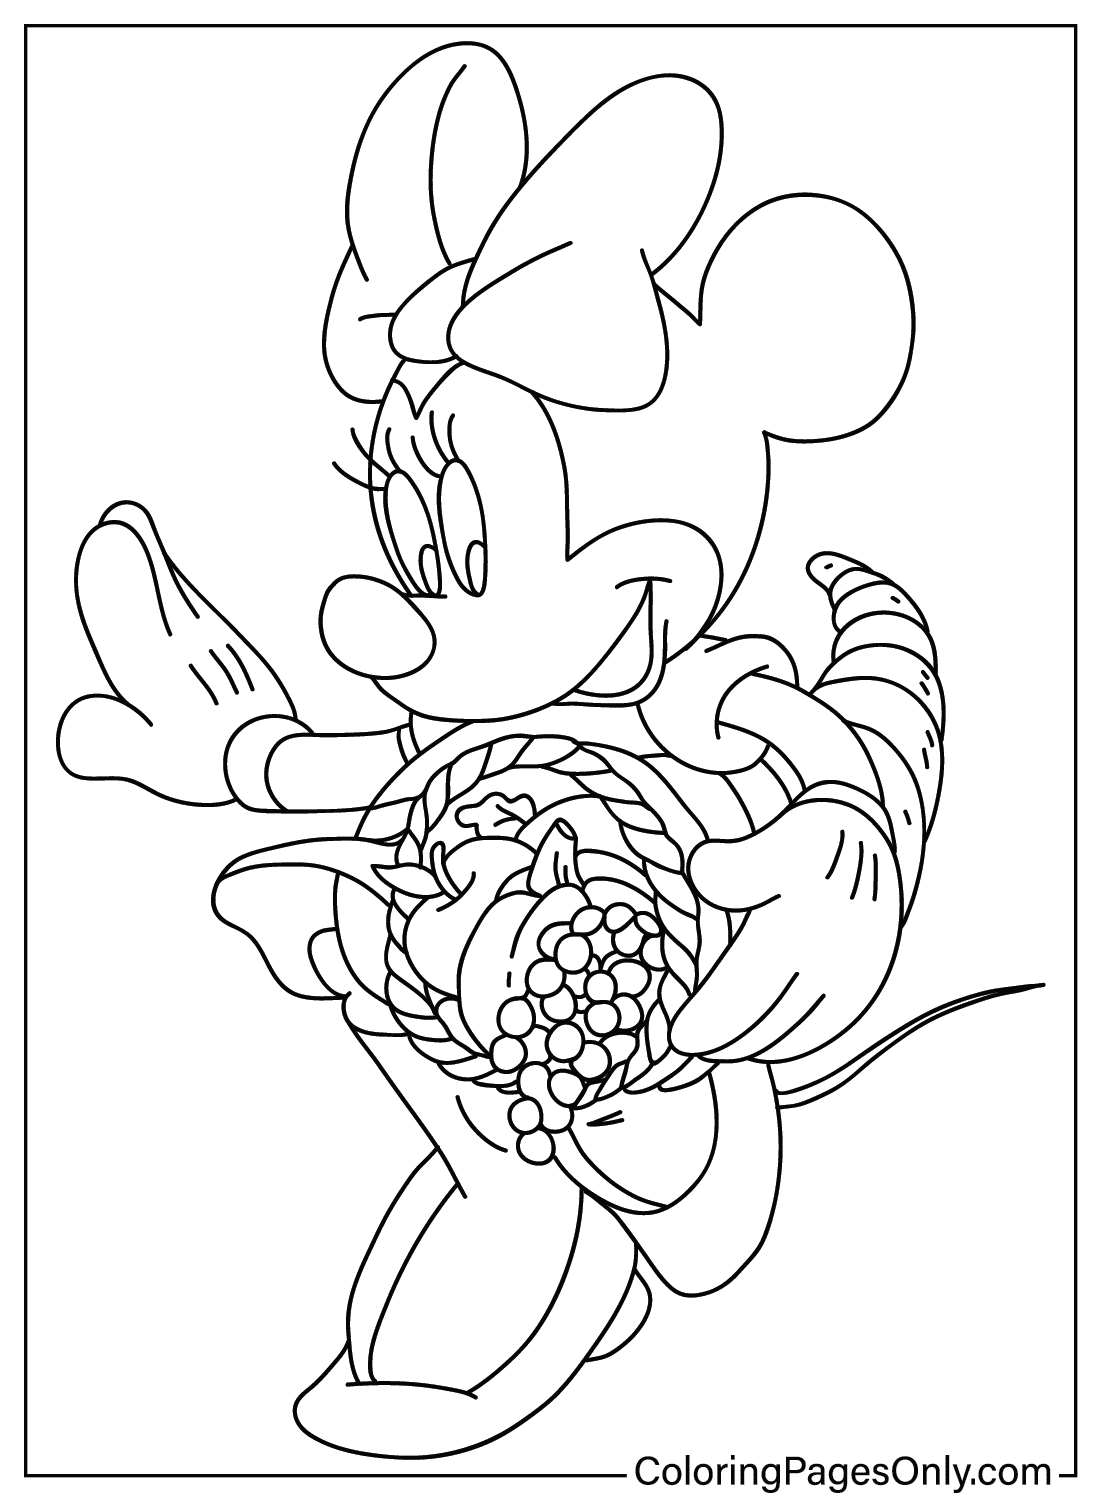 Página para colorear de Acción de Gracias de Disney Minnie de Acción de Gracias de Disney